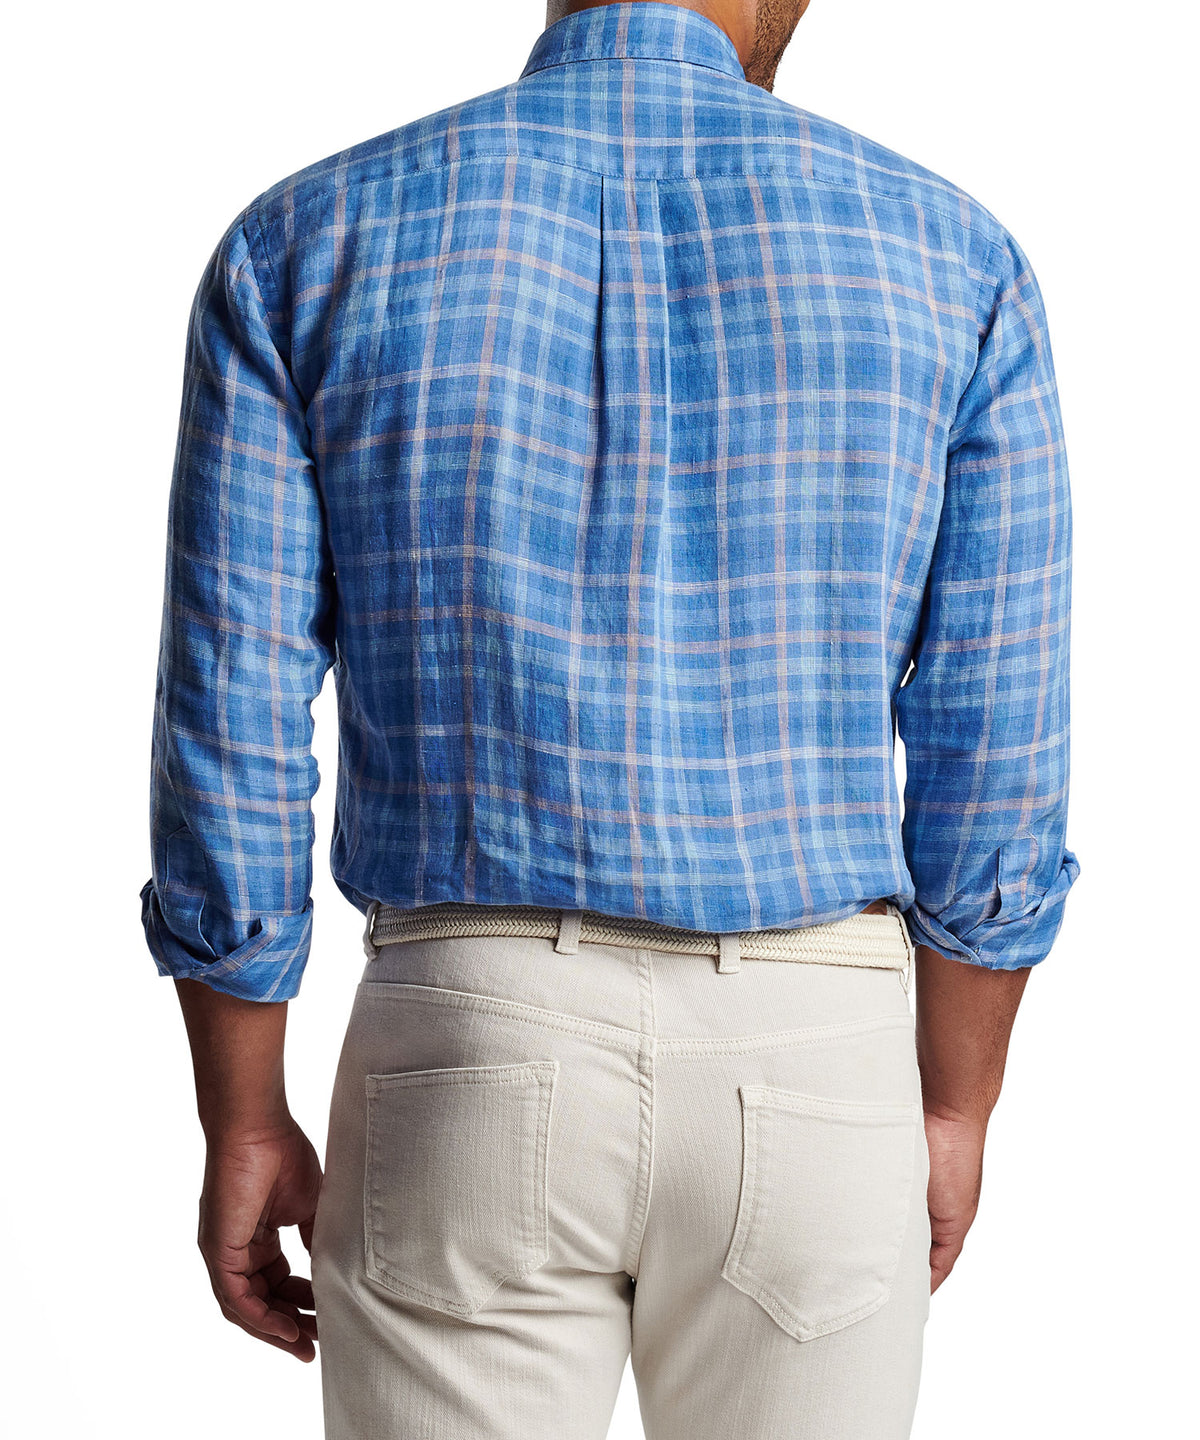 Peter Millar Long Sleeve 'Ashore' Linen Sport Shirt, Big & Tall